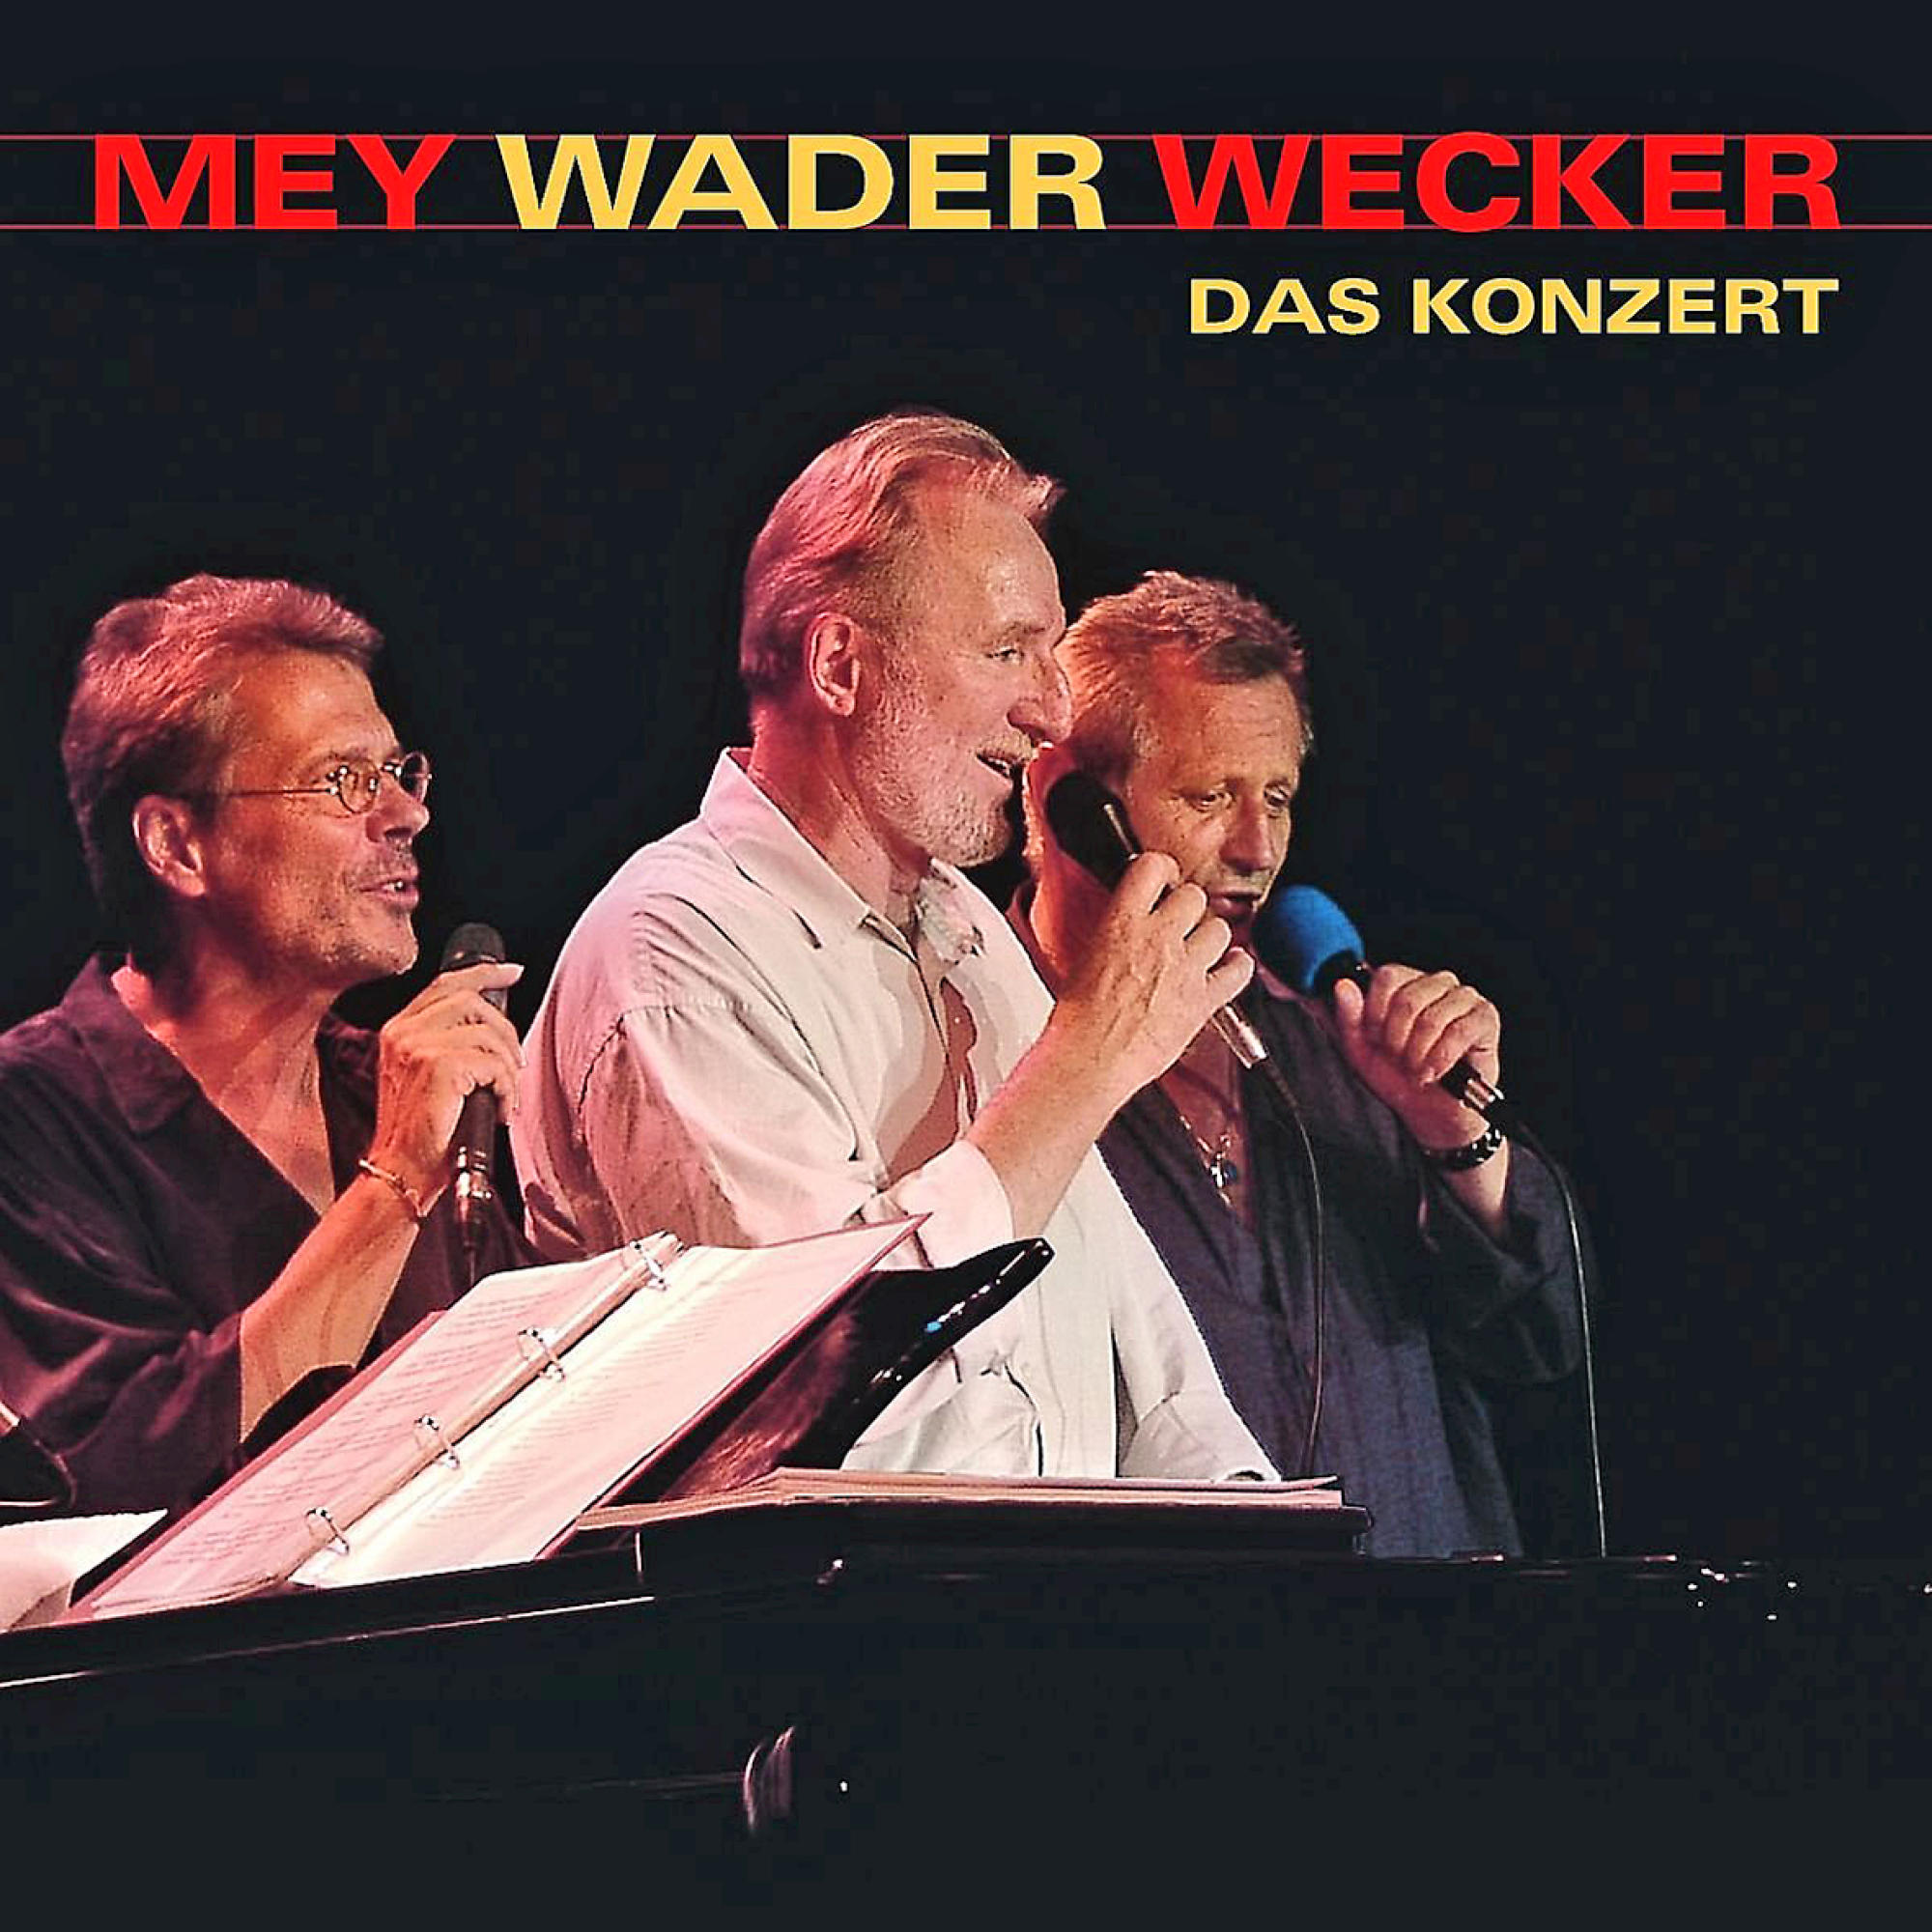 Wecker (CD) Hannes Wader Konzert Konstantin - Reinhard - Das Wecker Mey, Mey - Wader,